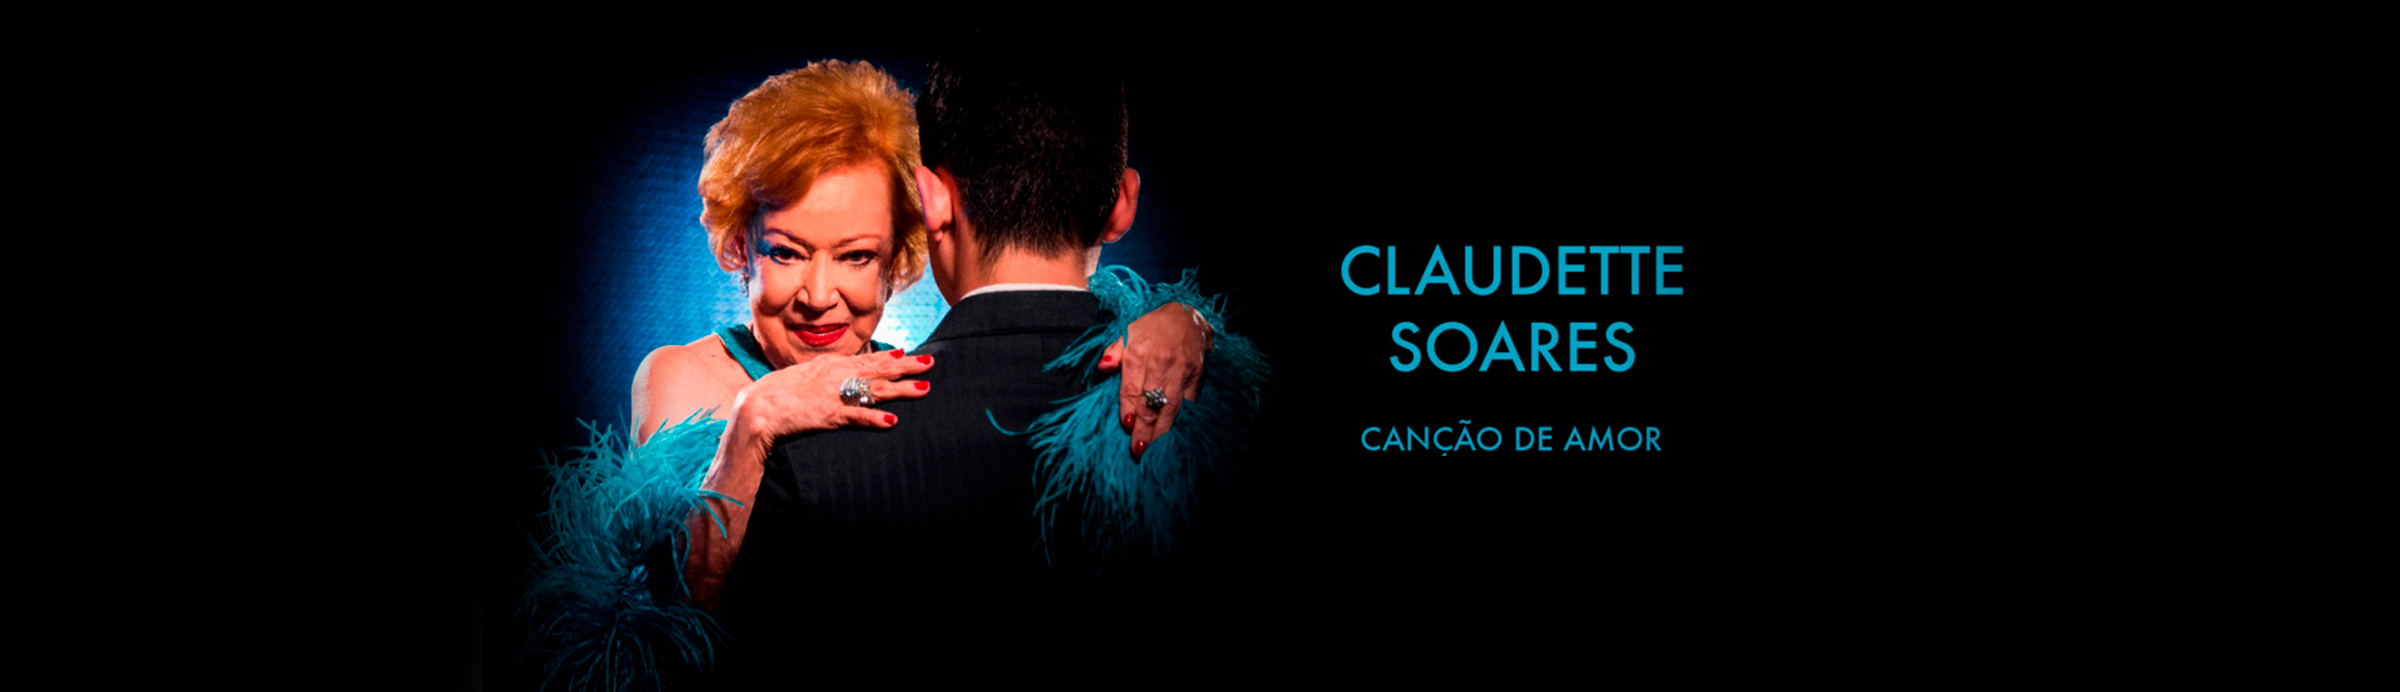 Claudette Soares e a bossa do samba canção de amor